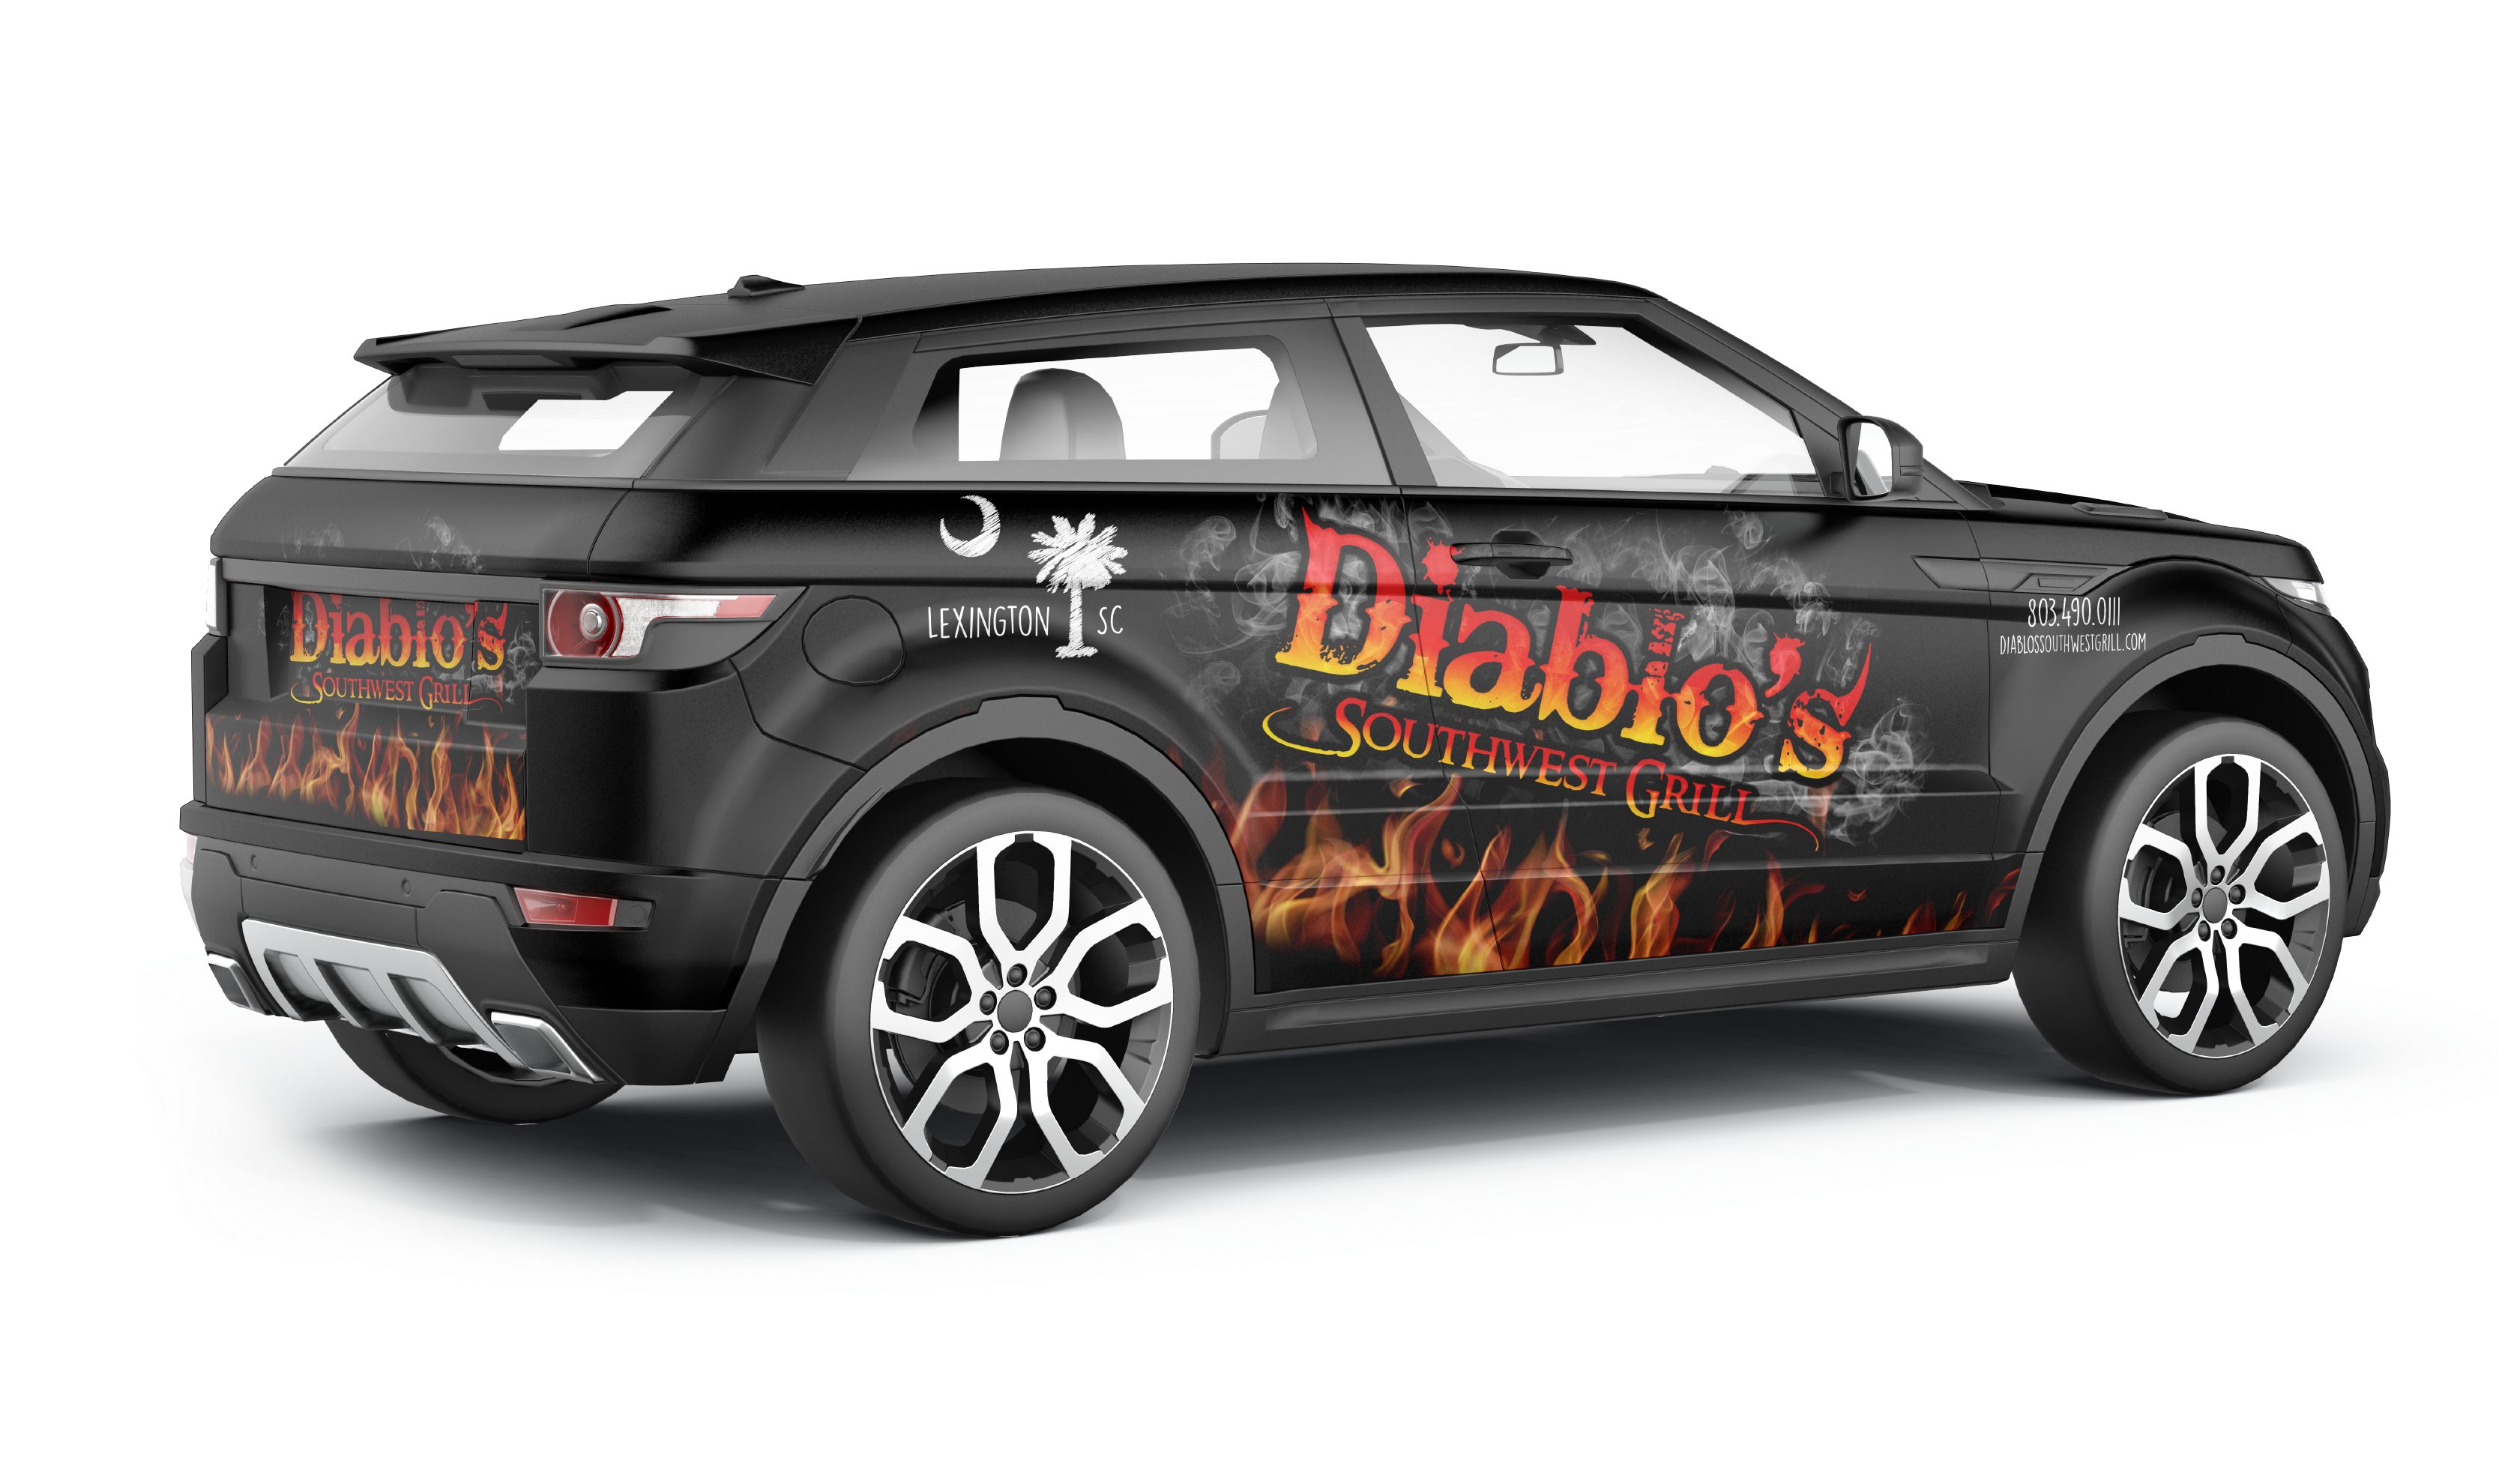 Vehicle Wrap - Diablo's Southwest Grill